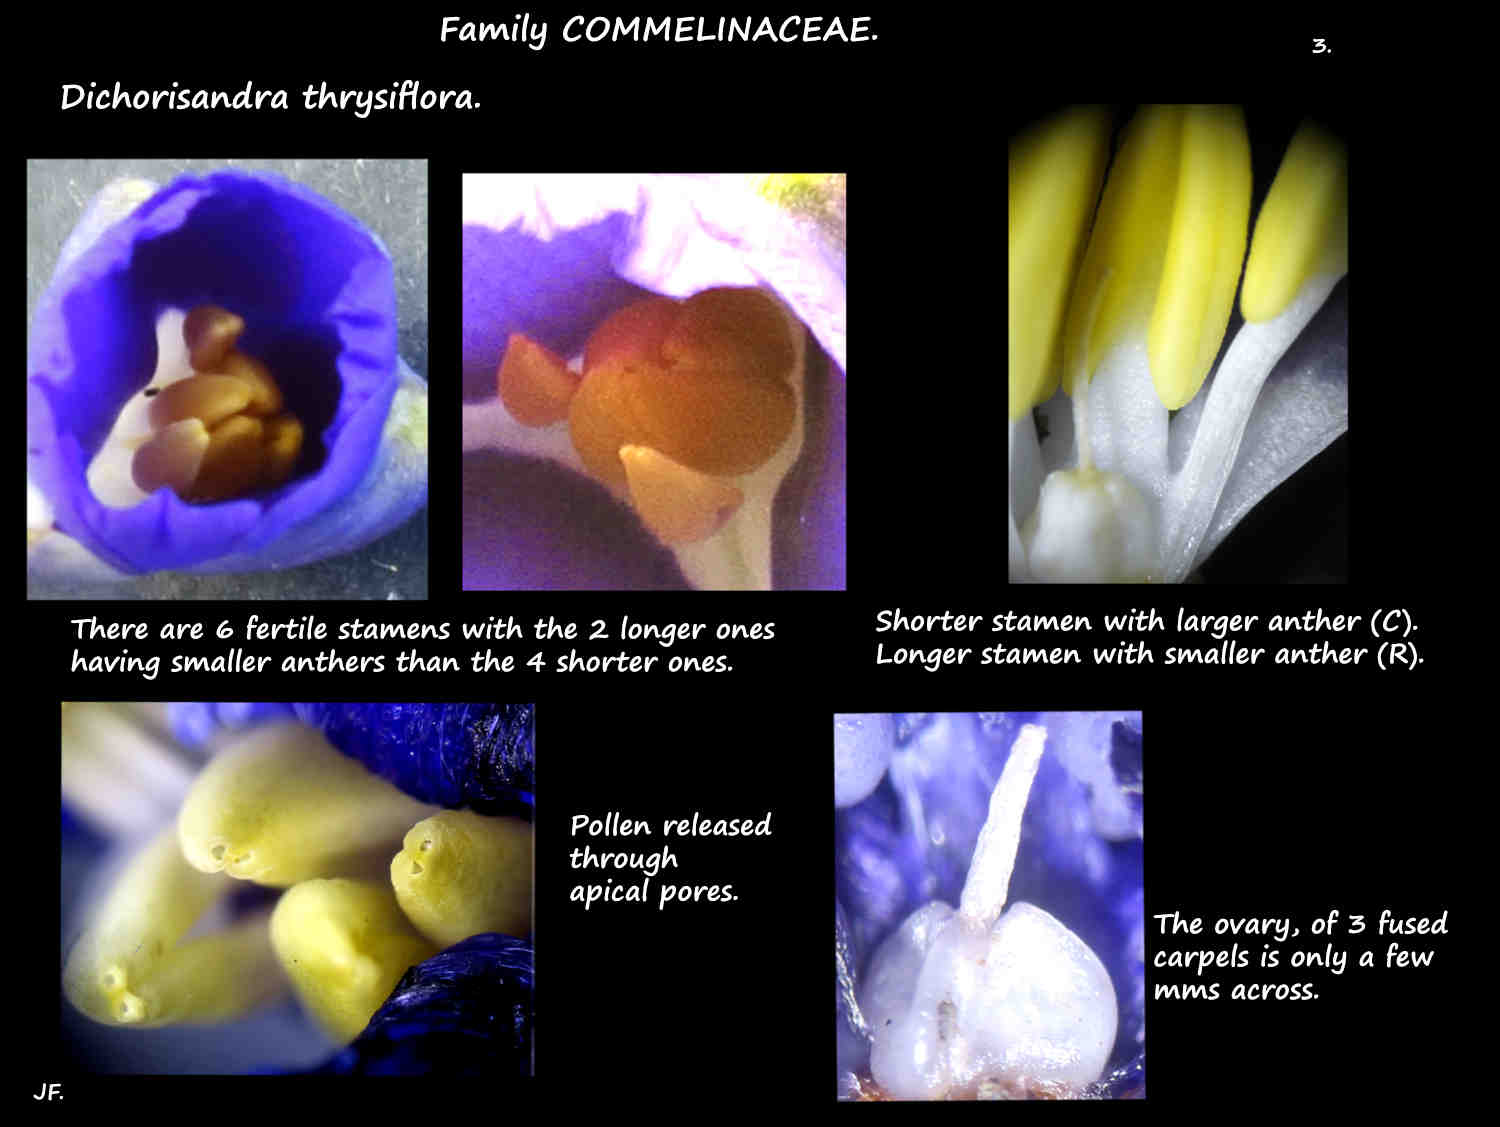 3 Dichorisandra thrysiflora stamens & ovary